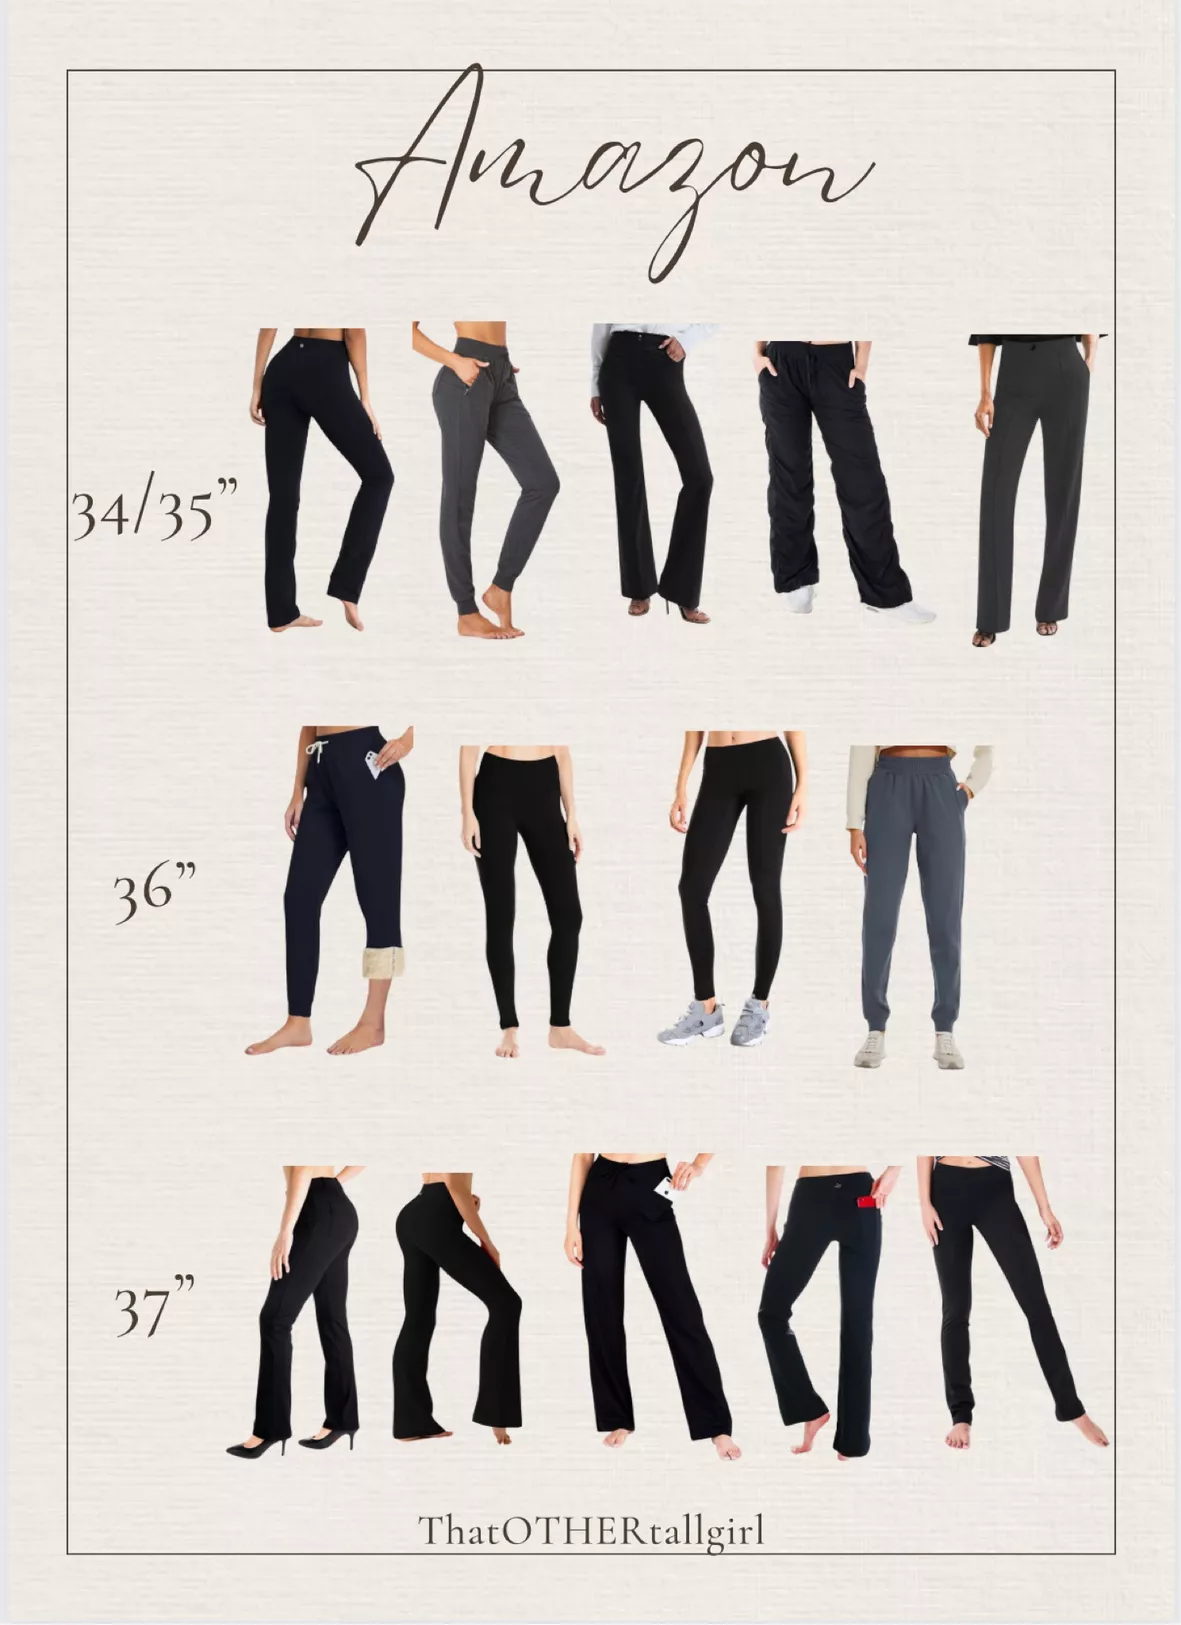  HOdo 32/34/36 Inseam Womens Tall Sweatpants Fleece